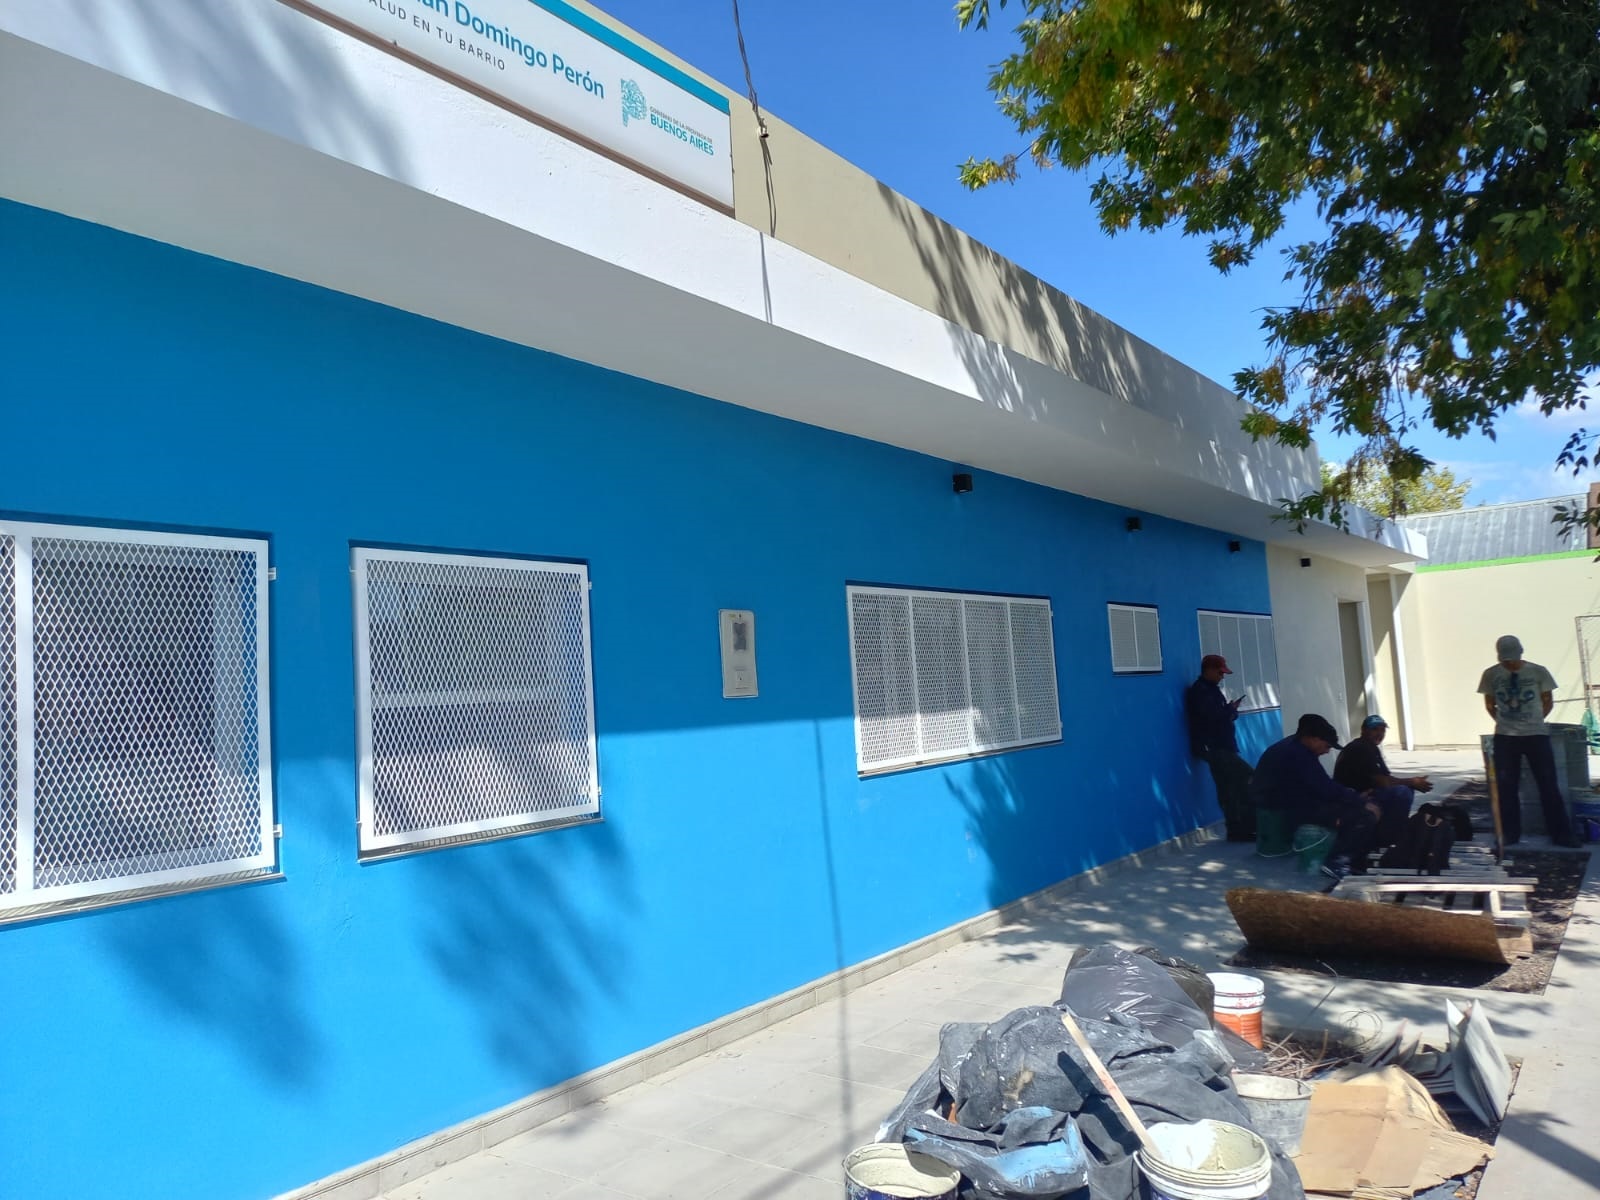 Obras / La nueva unidad sanitaria de Parque Americano está en su última etapa de finalización y próxima a inaugurar